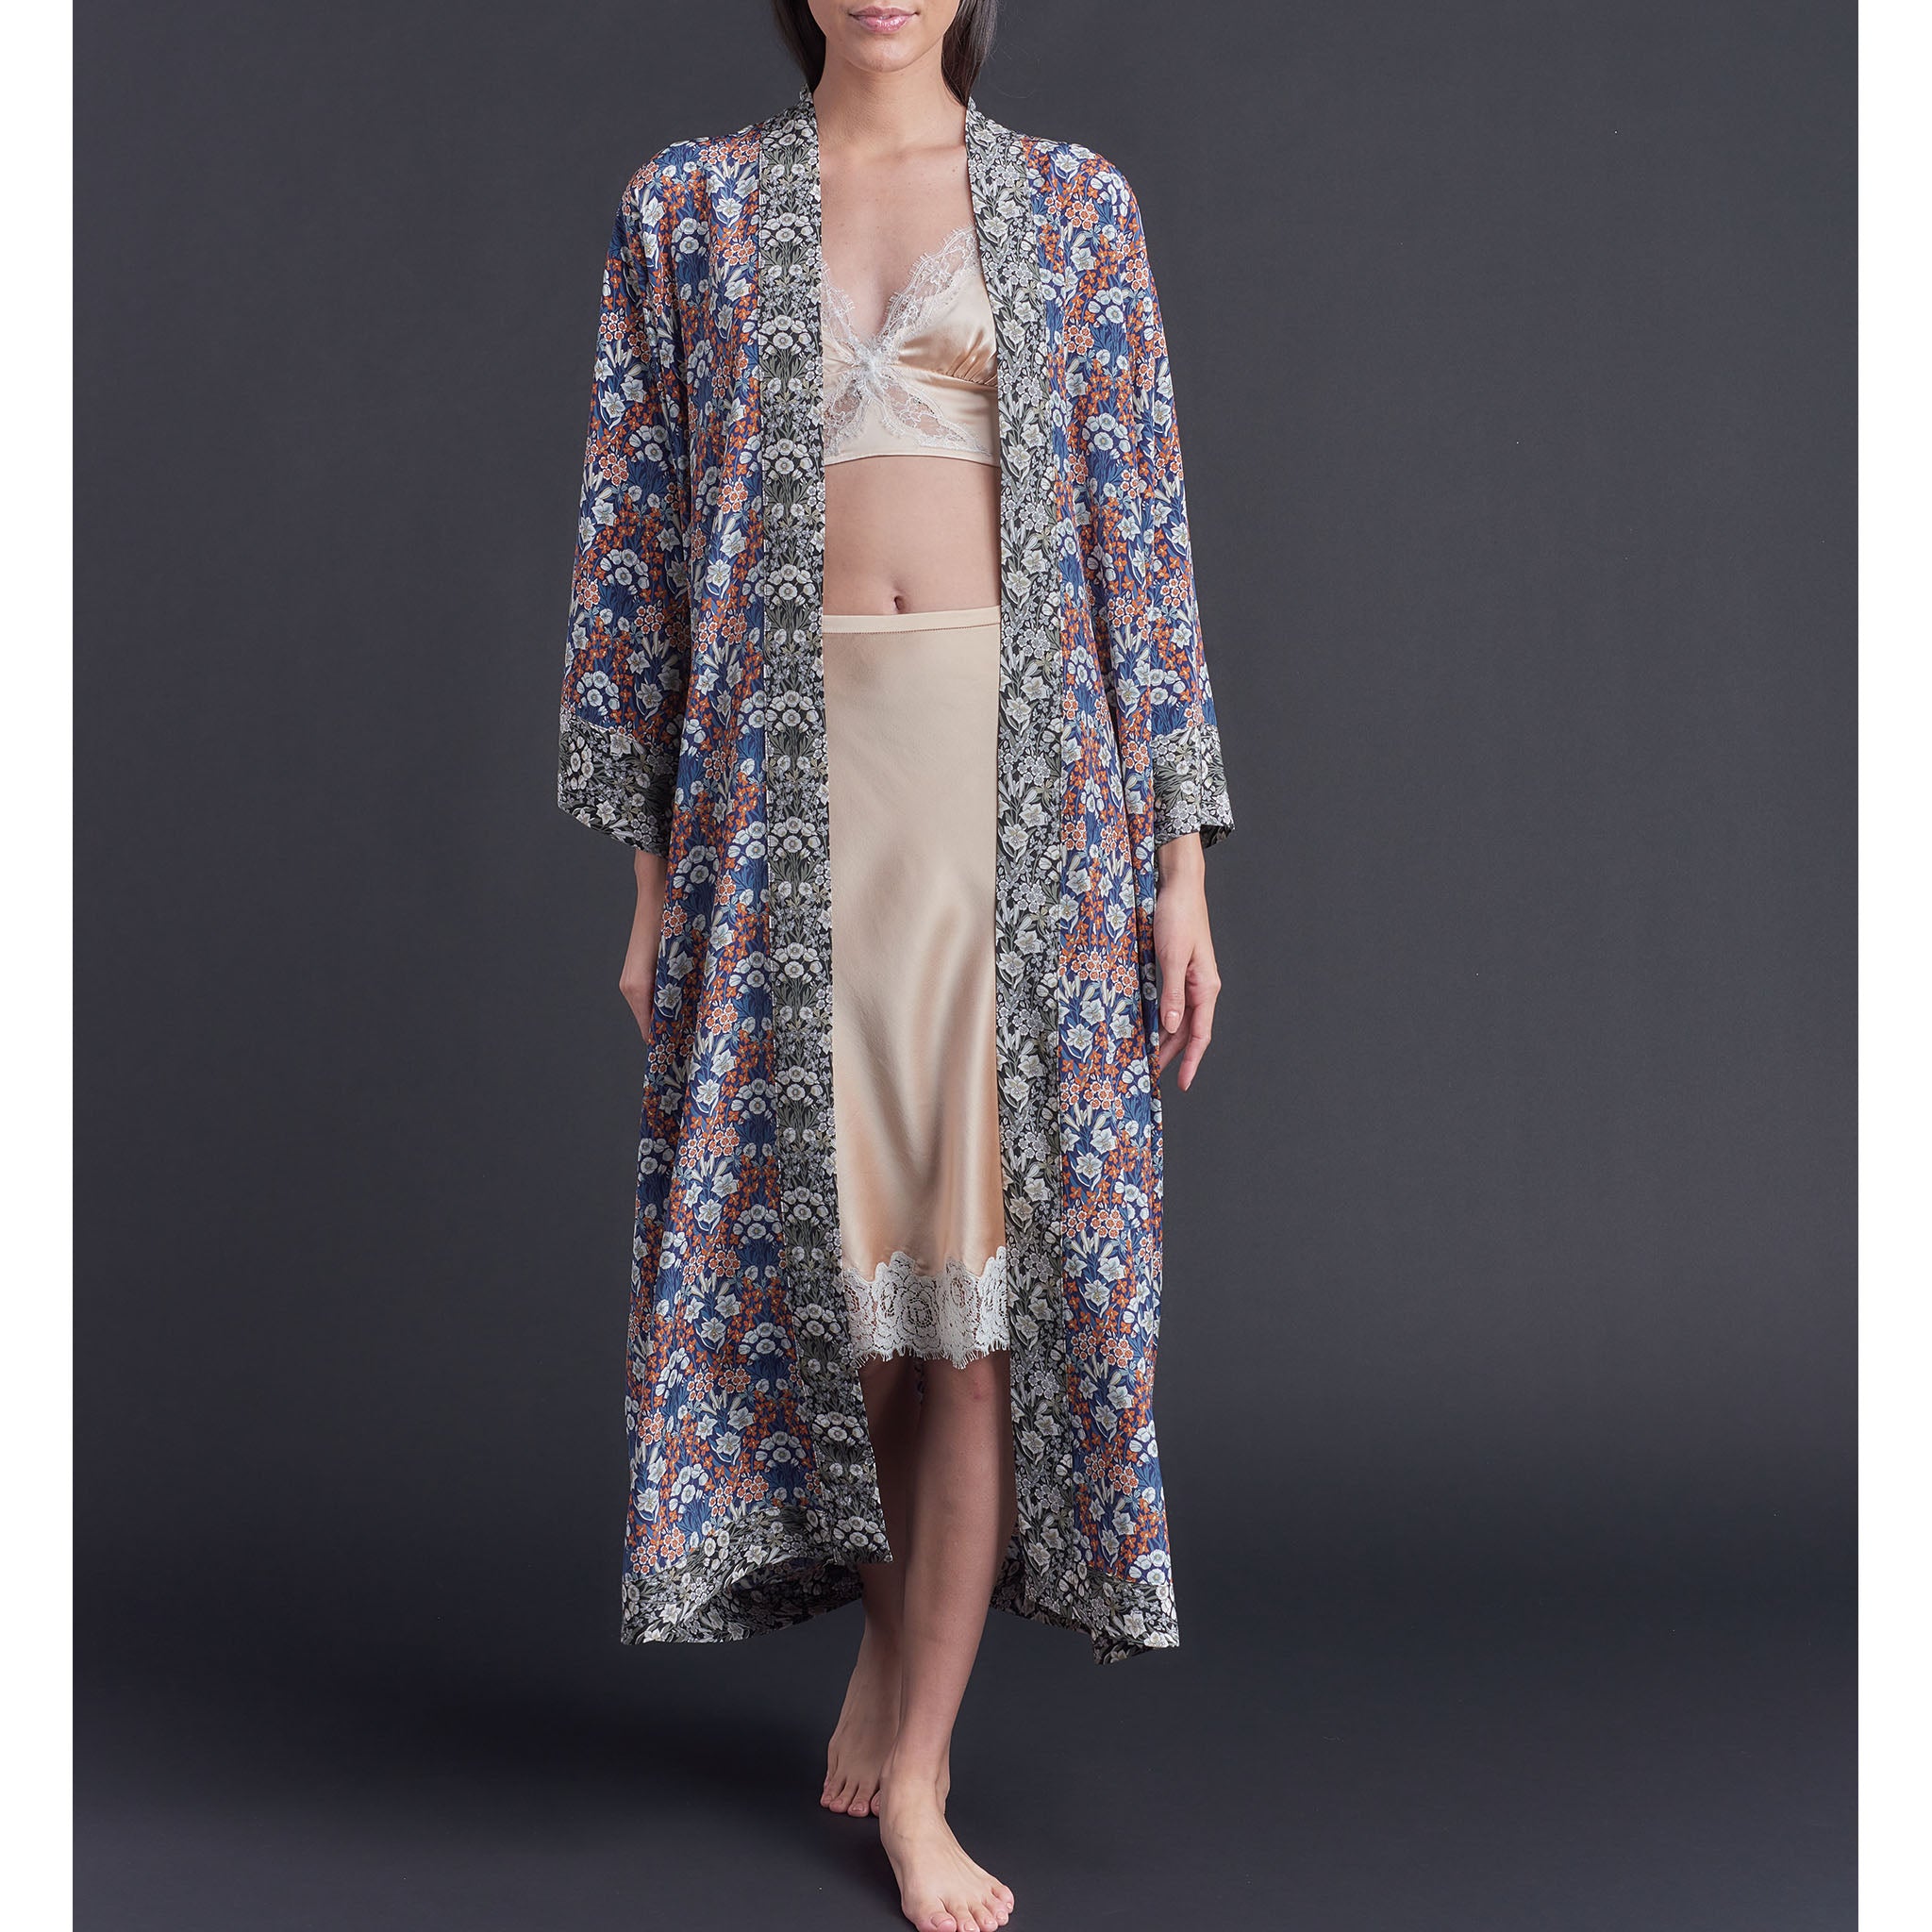 Asteria Kimono Robe in Liberty of London Mountain Primrose Silk Crepe De Chine